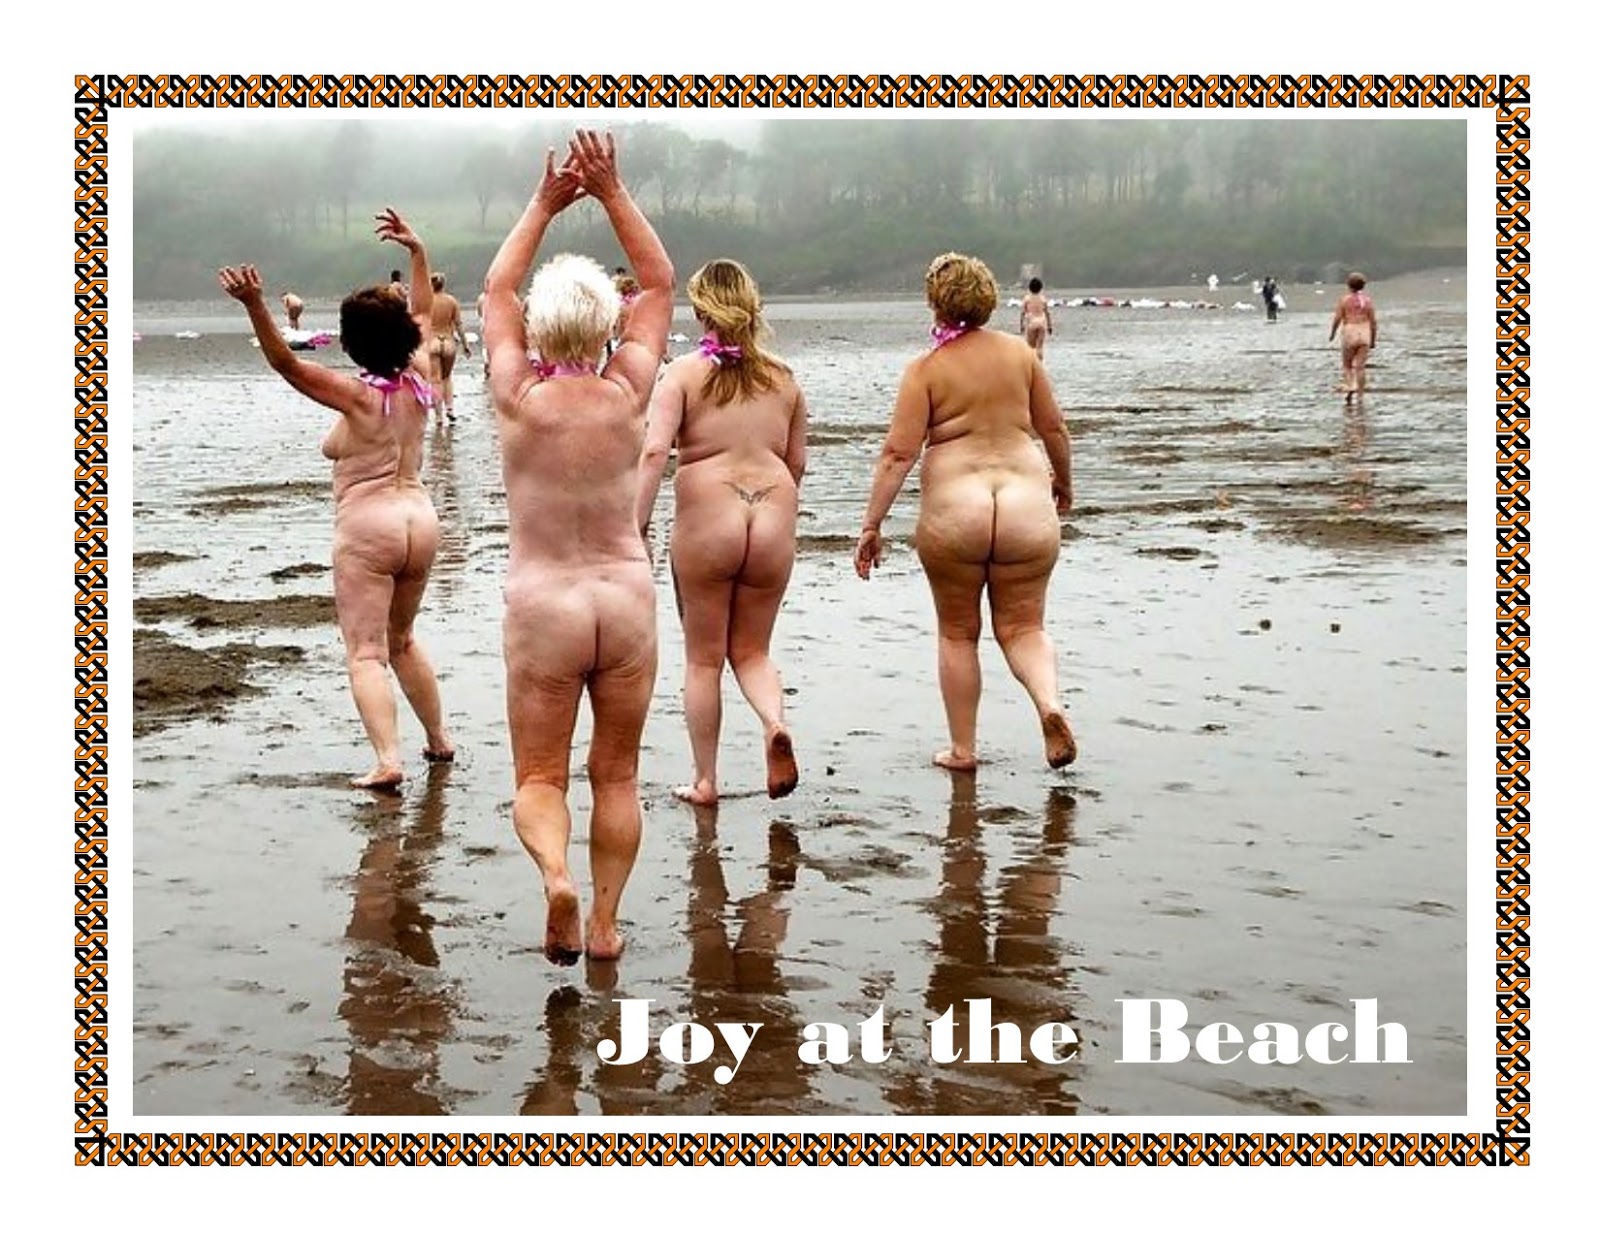 купаемся голыми на пляже фото 33